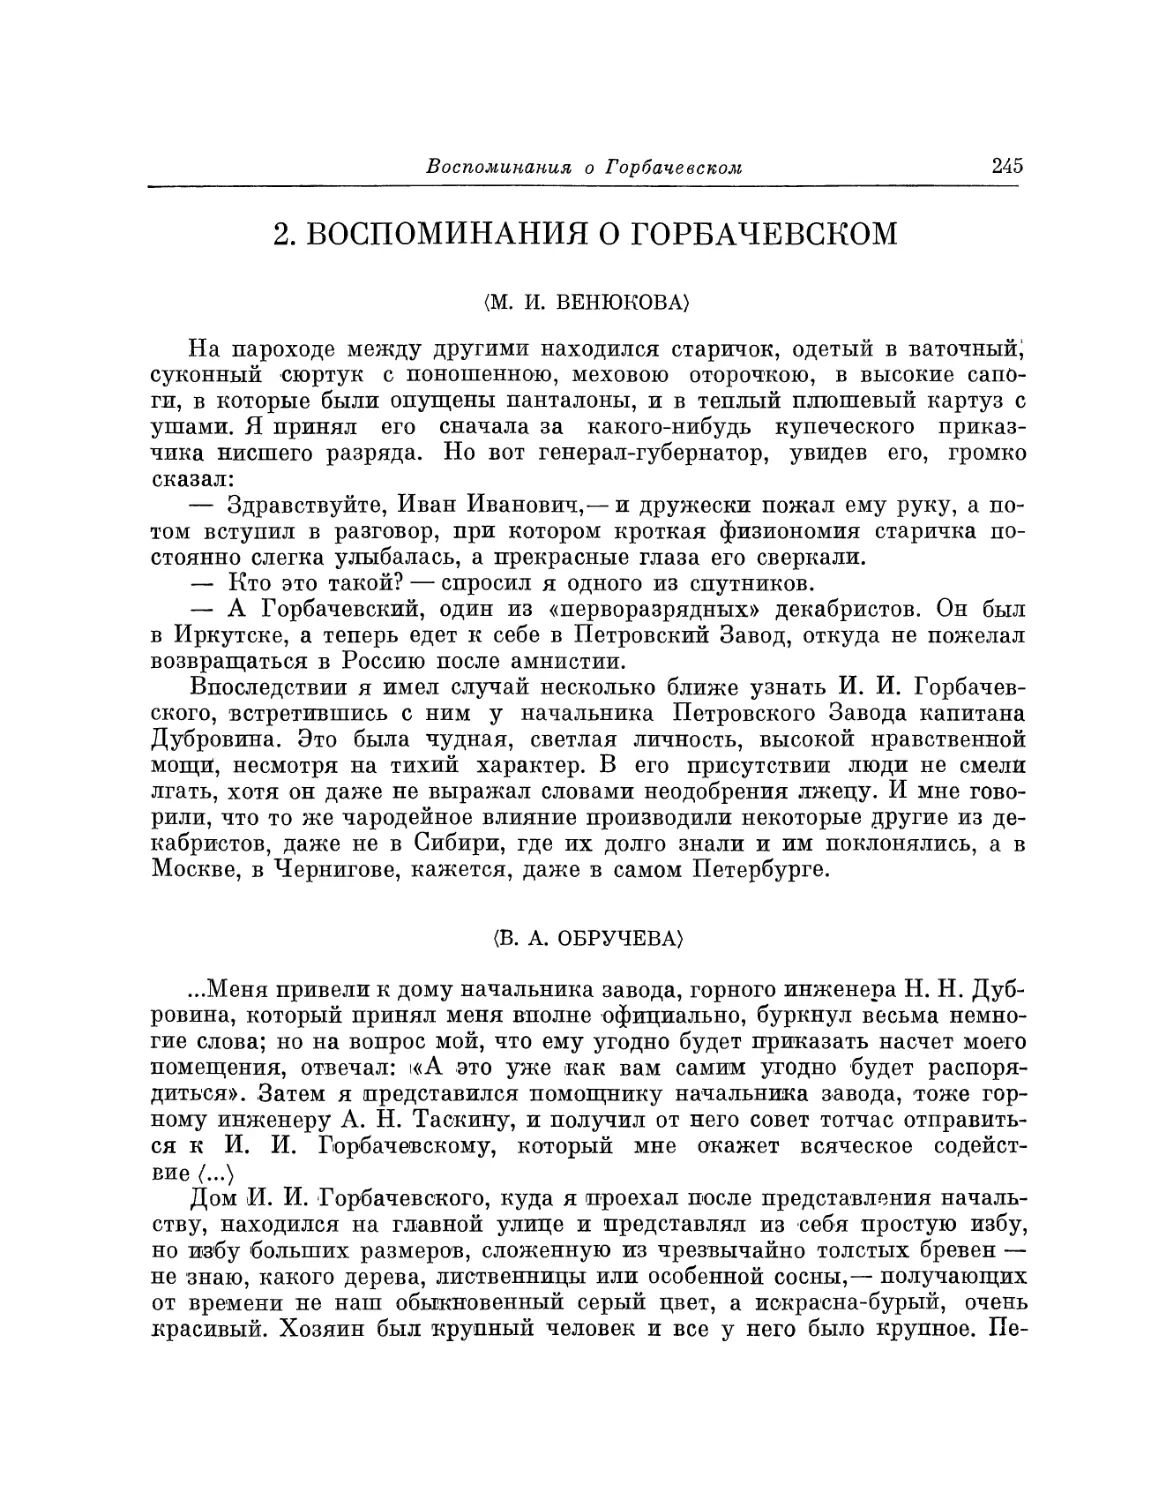 2. Воспоминания о Горбачевском
В.А. Обручева